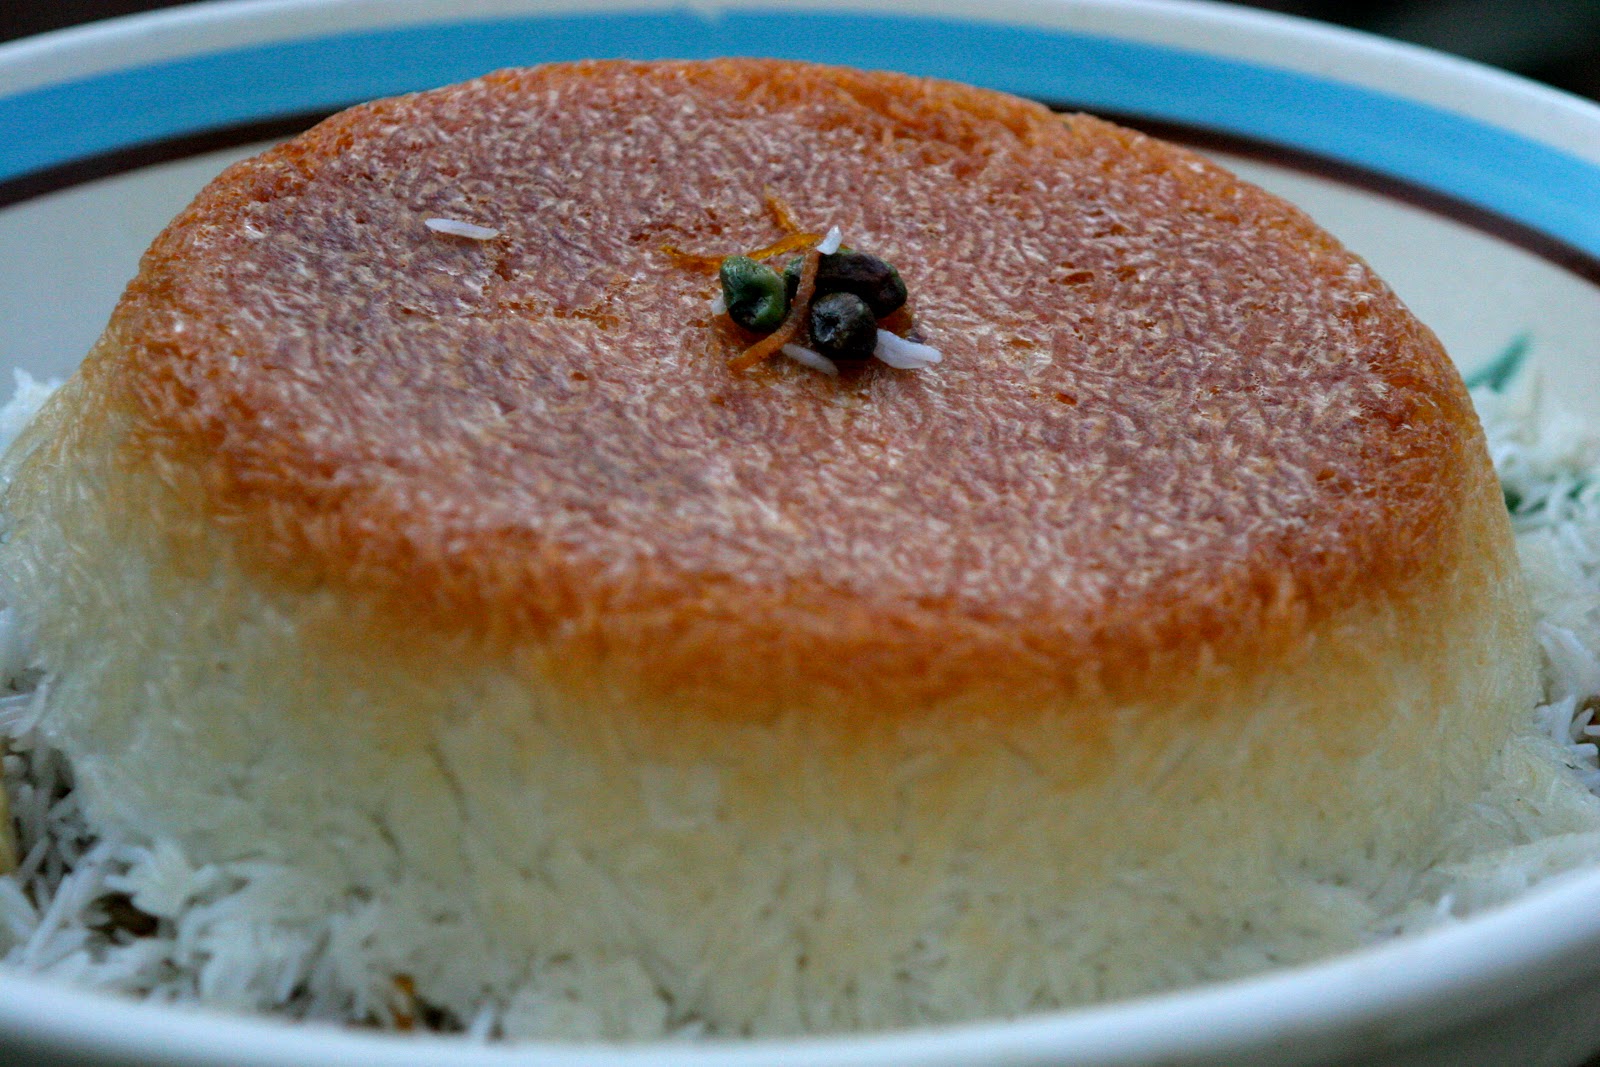 http://3.bp.blogspot.com/-cBMgyFeE8Q8/UBeHVvNf-ZI/AAAAAAAAARE/XI6Wbnfac6I/s1600/persian+rice.jpg